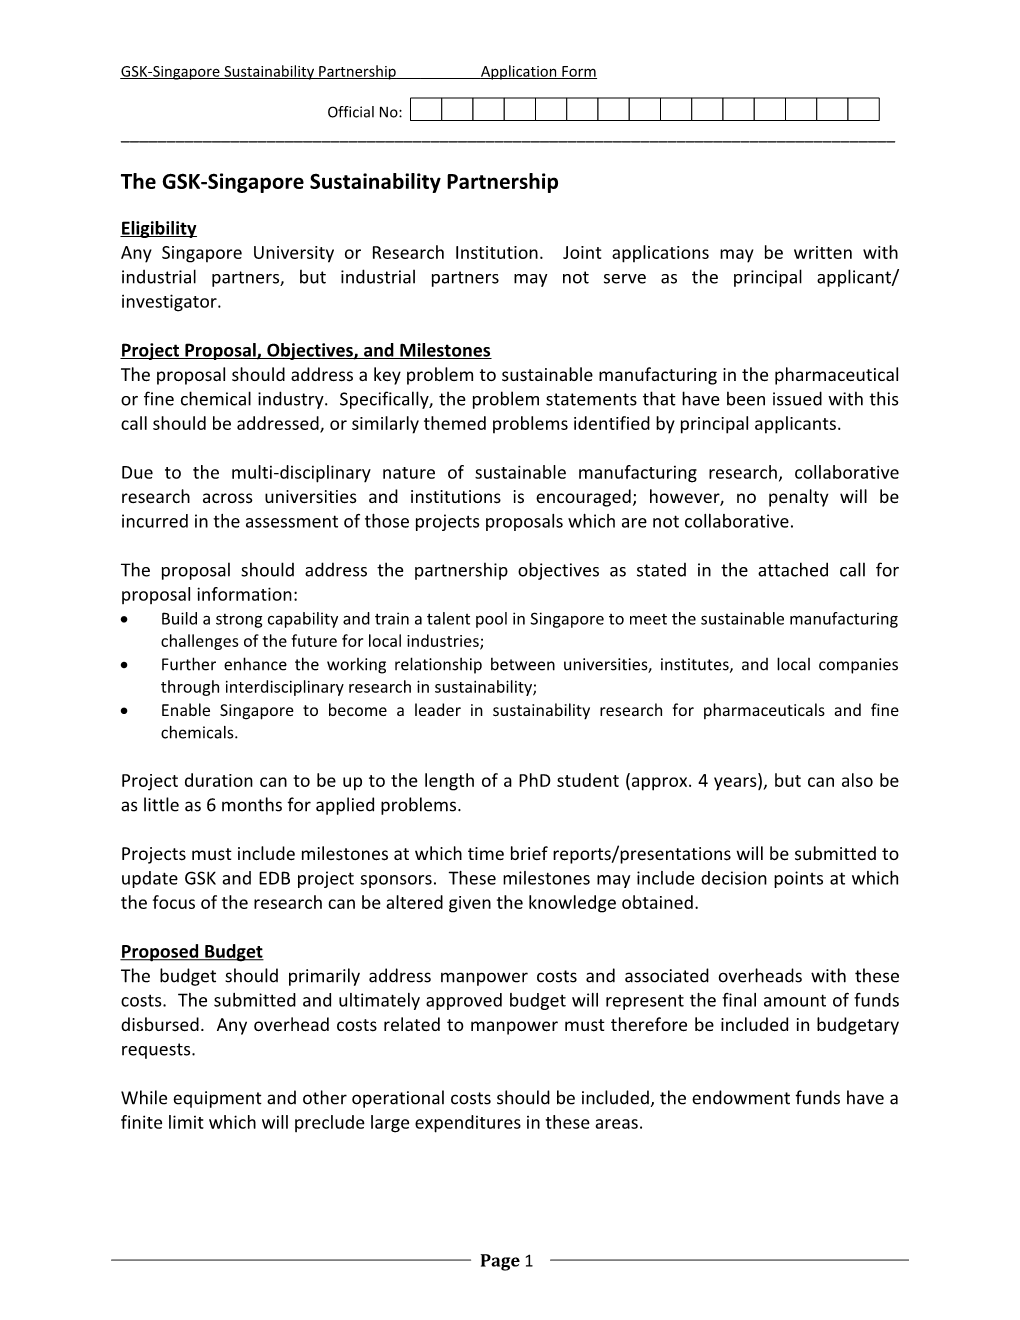 The GSK-Singapore Sustainability Partnership